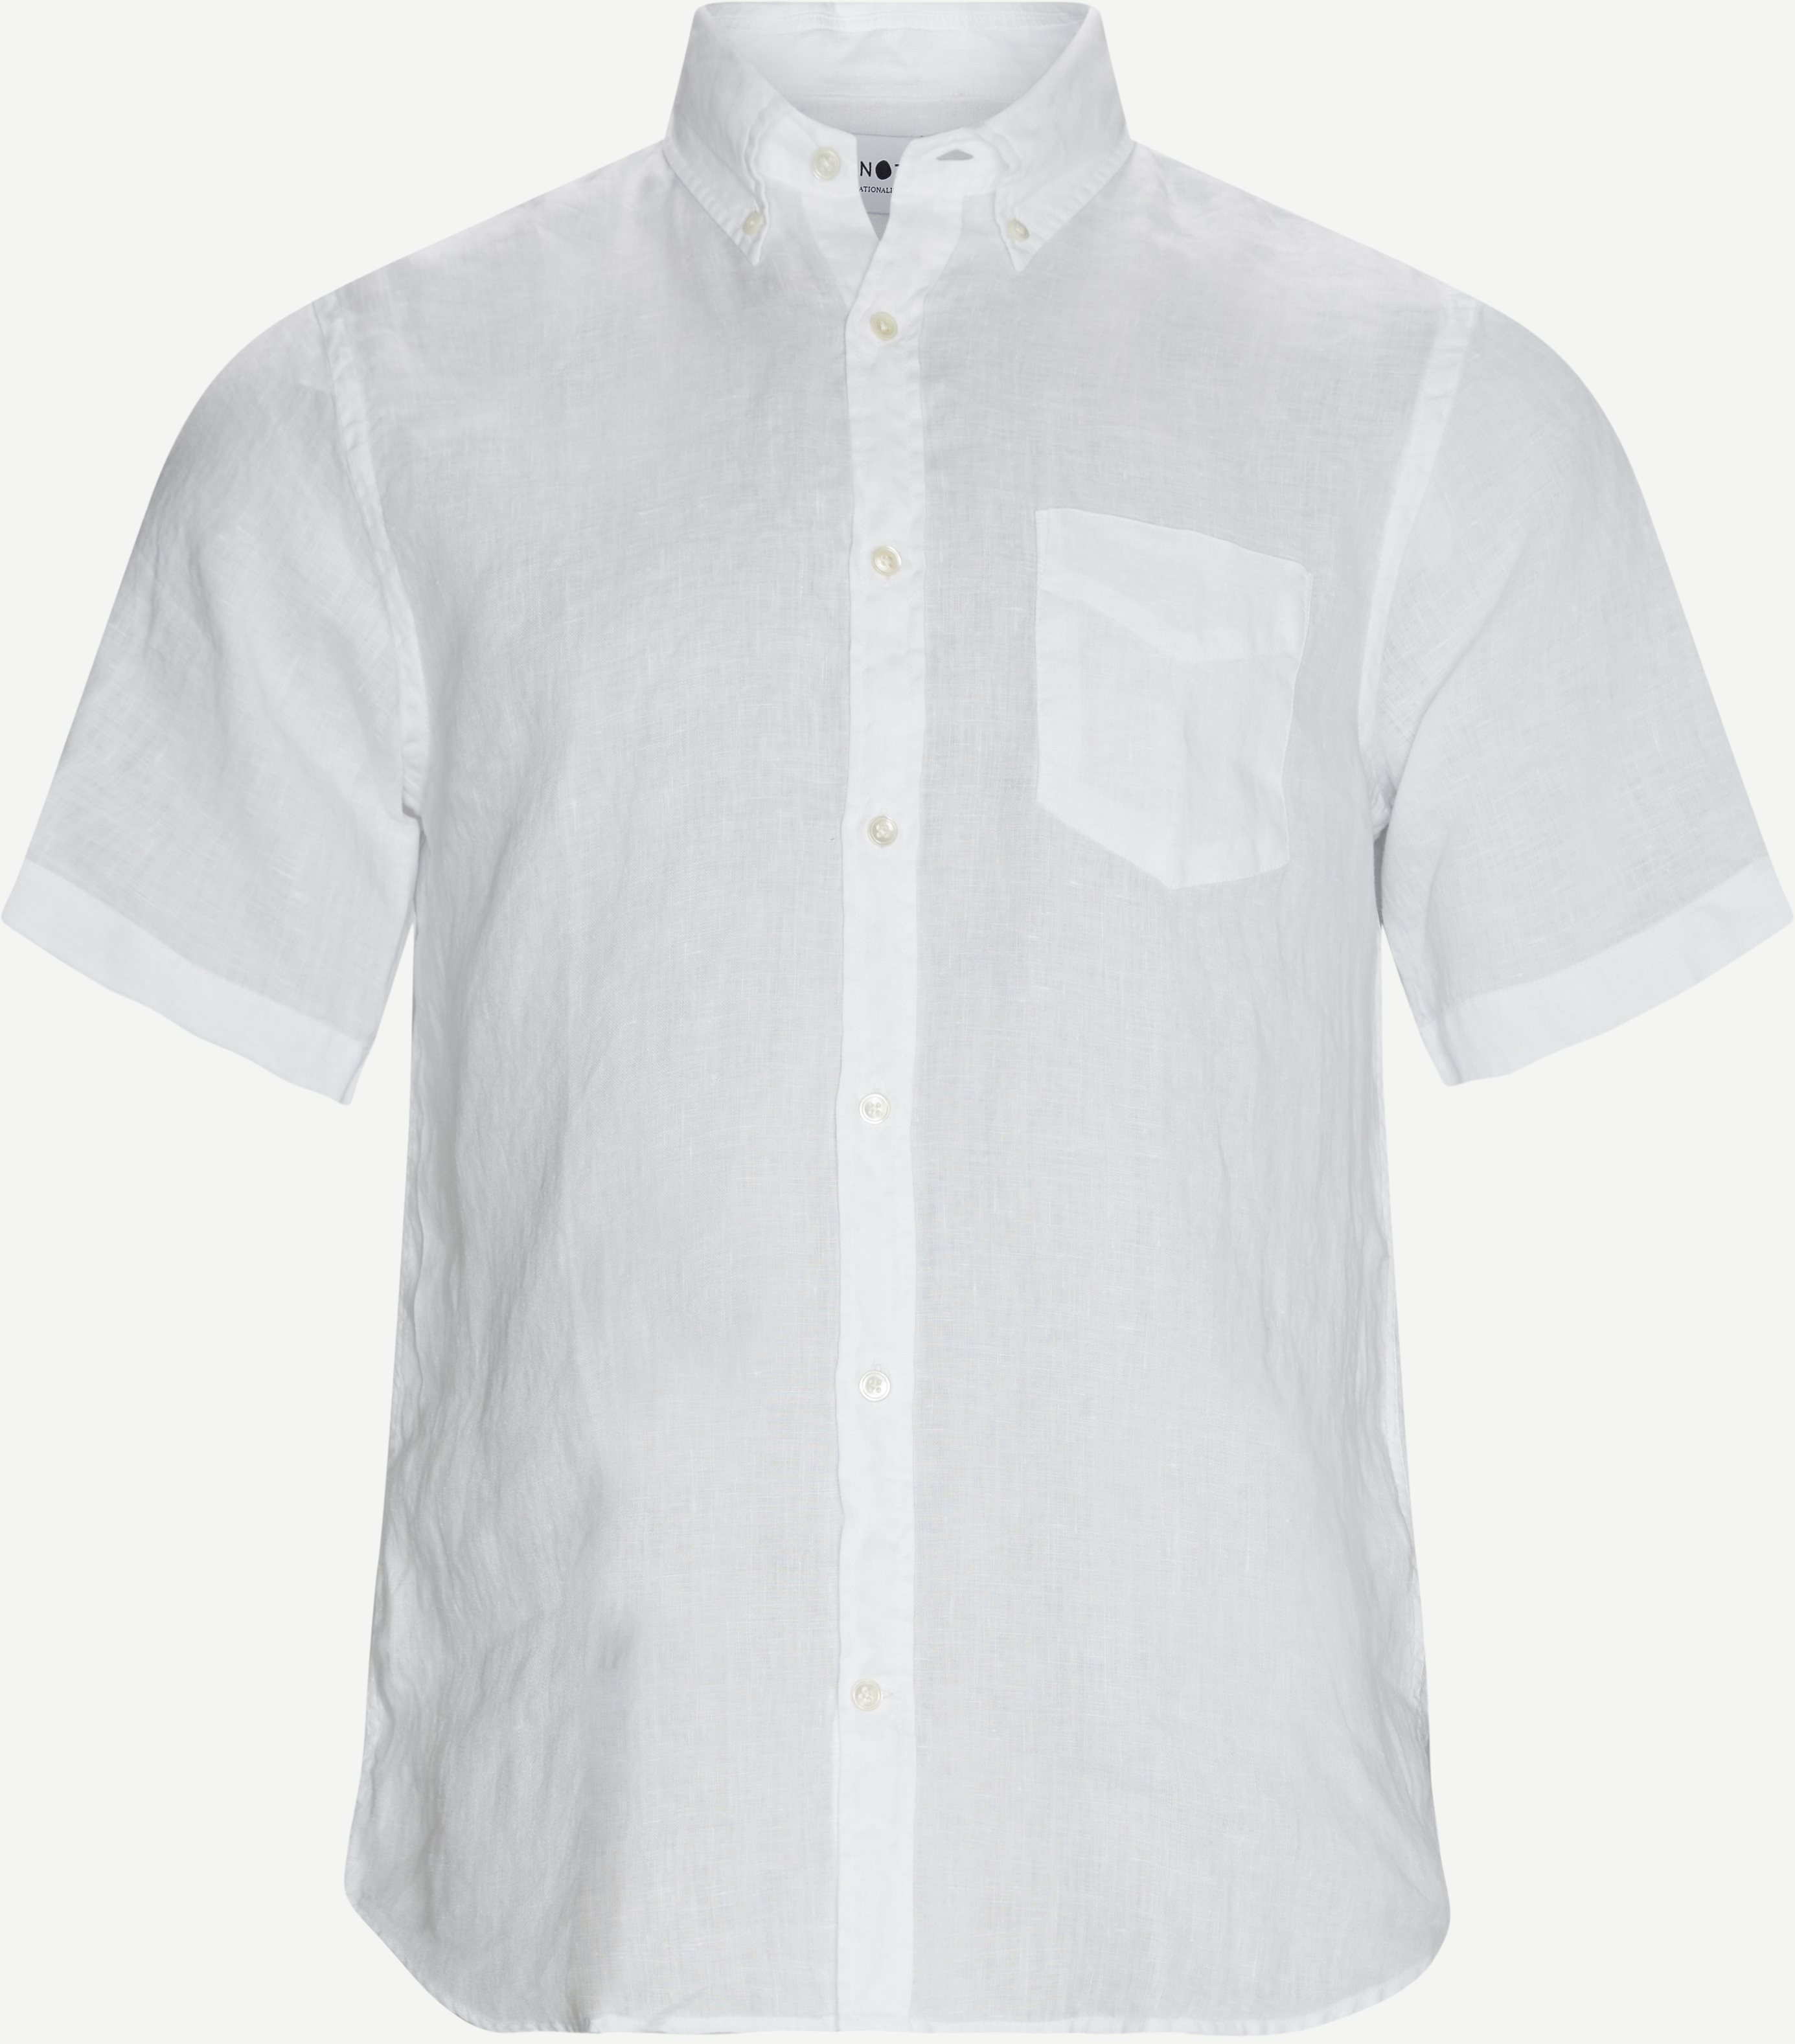 Tyrion K/Æ Skjorte - Short-sleeved shirts - Regular fit - White